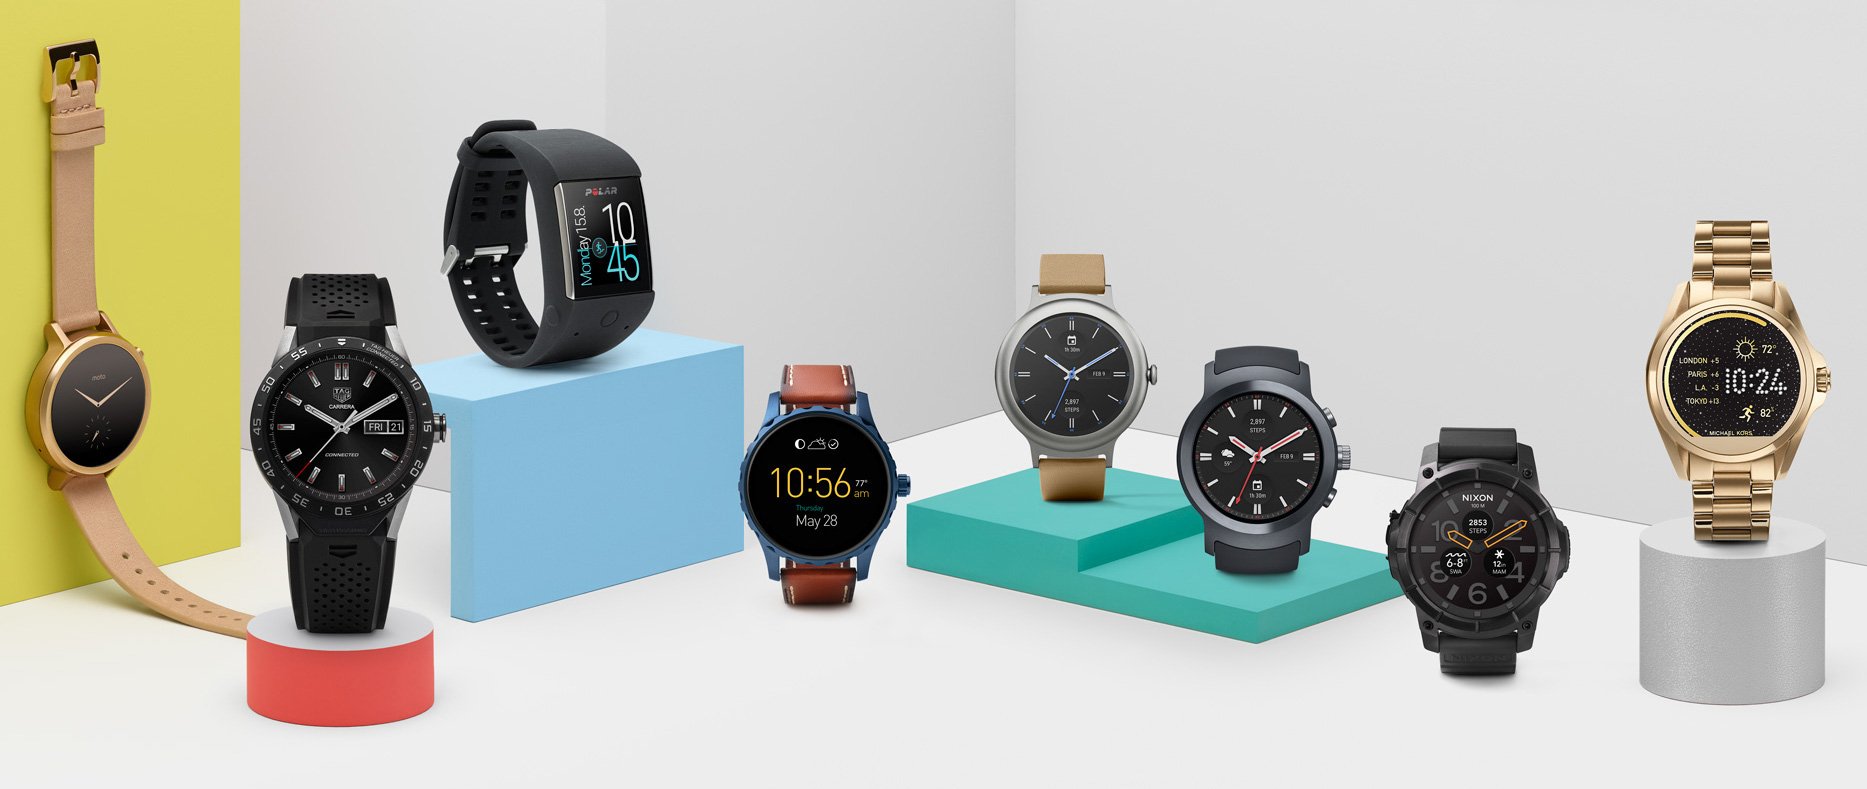 Android Wear wird auf der eigenen Website mit einer großen Palette unterschiedlicher Smartwatches beworben (Bild: Android)